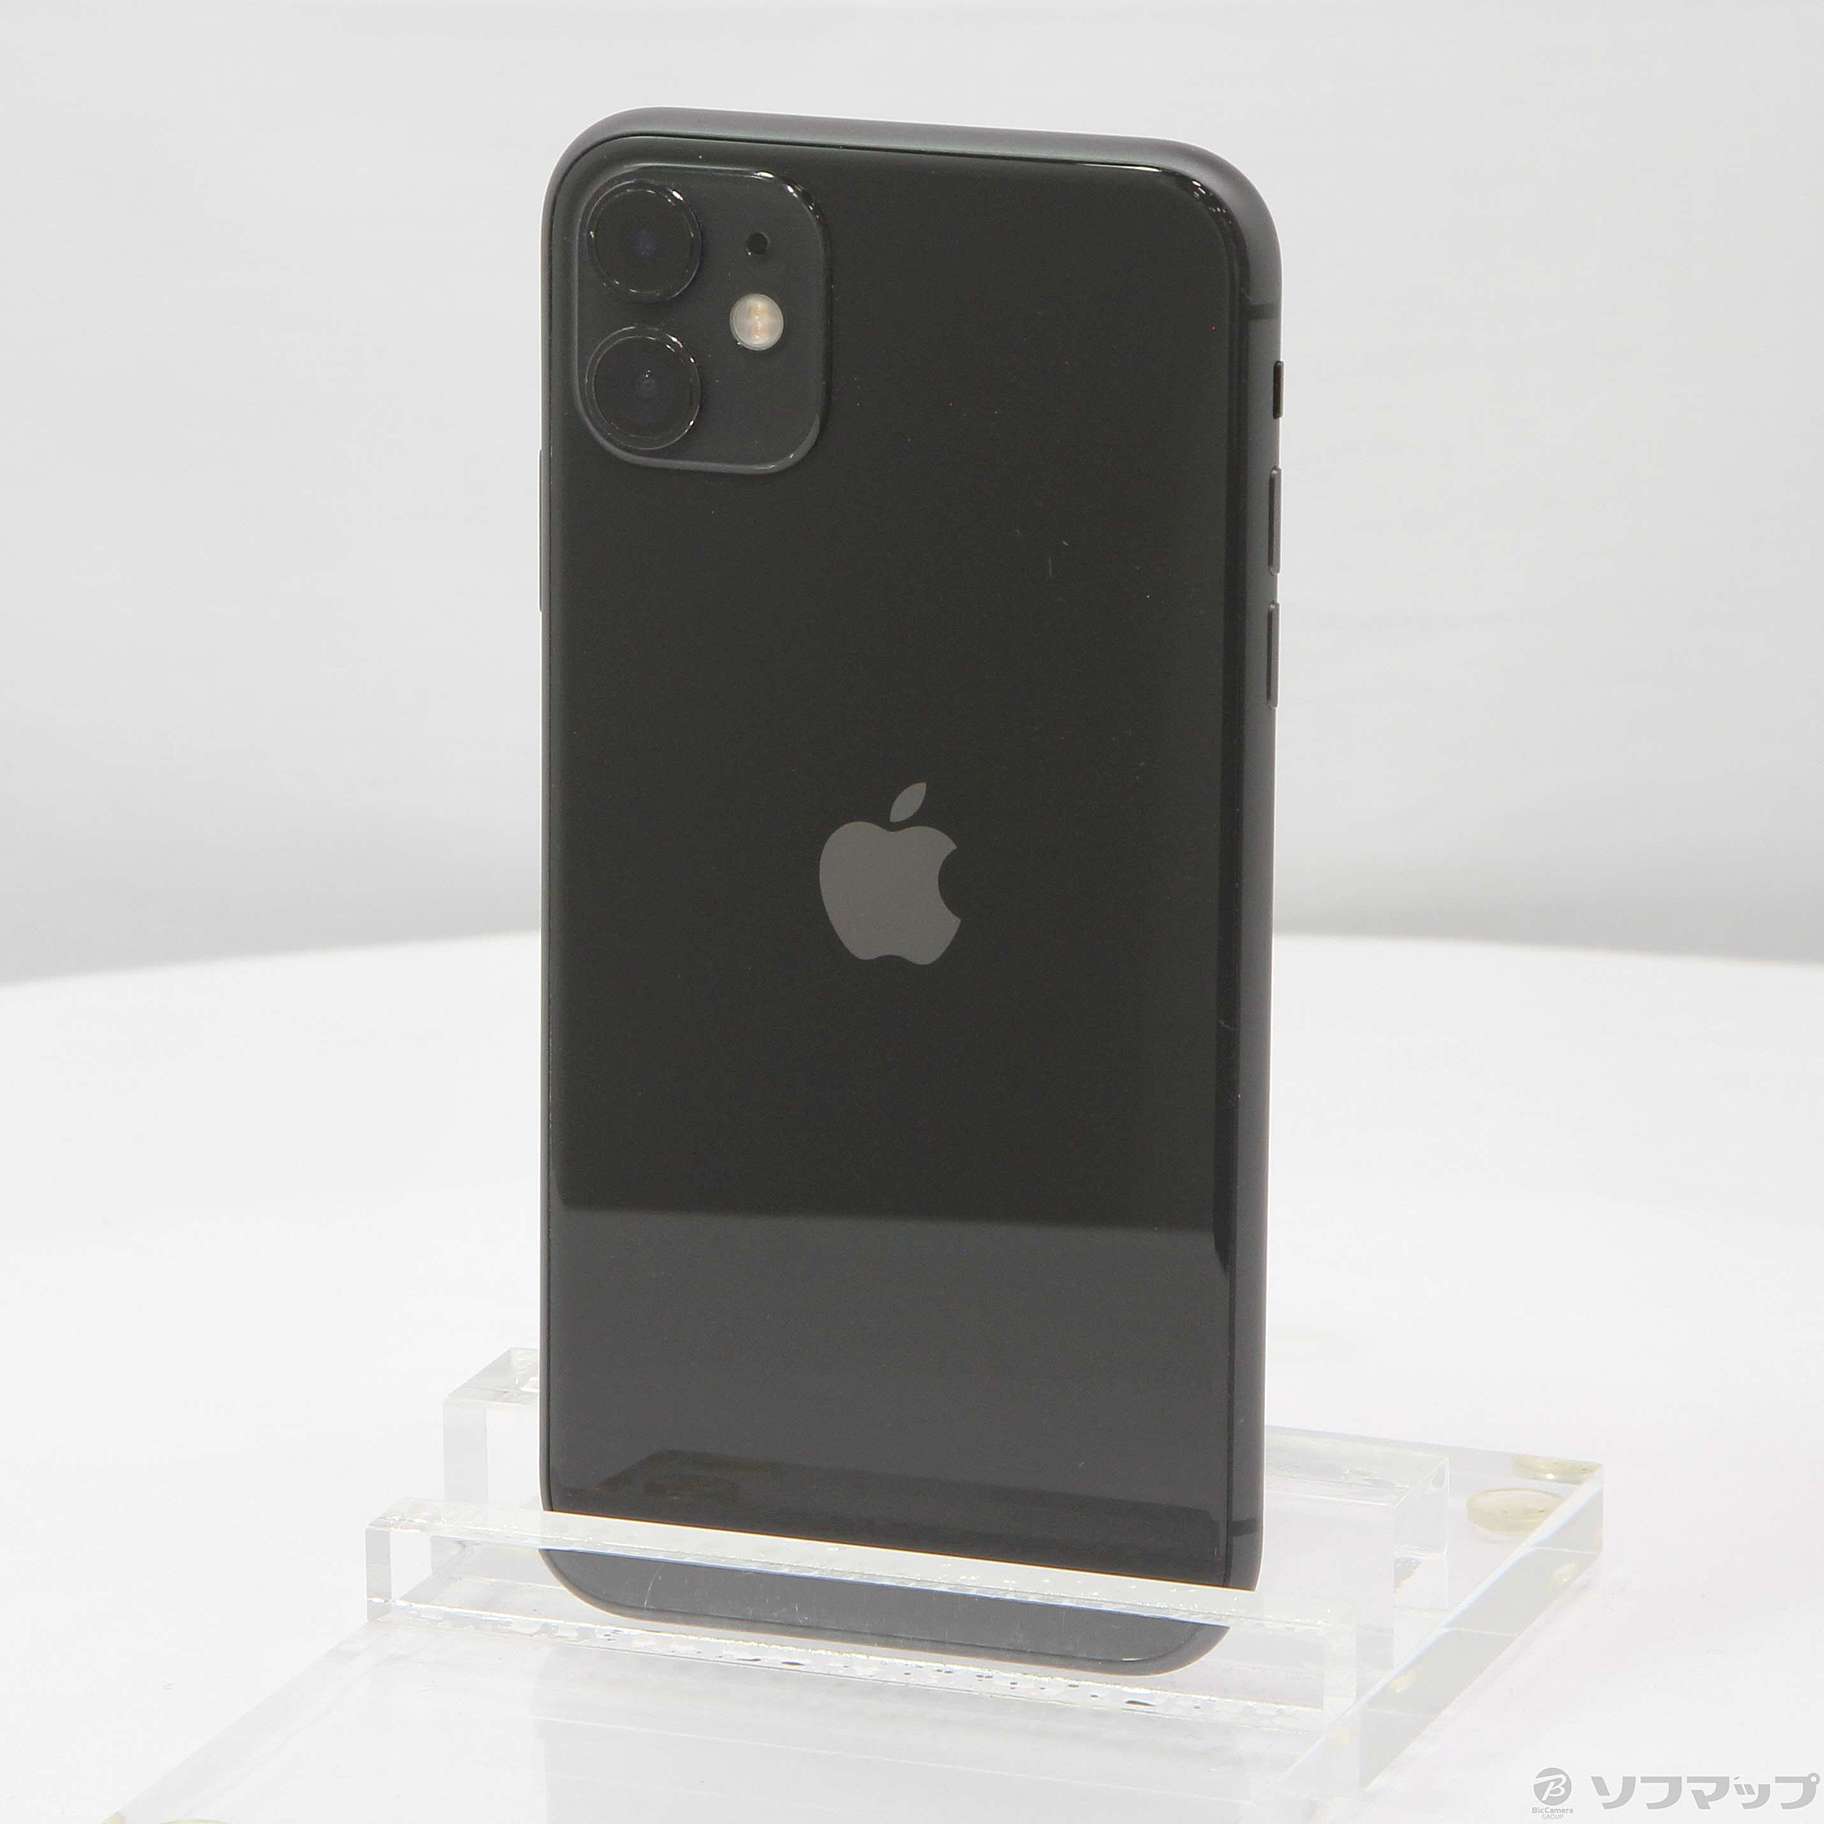 11 GB 64 ブラック SIMフリー iPhone - 8